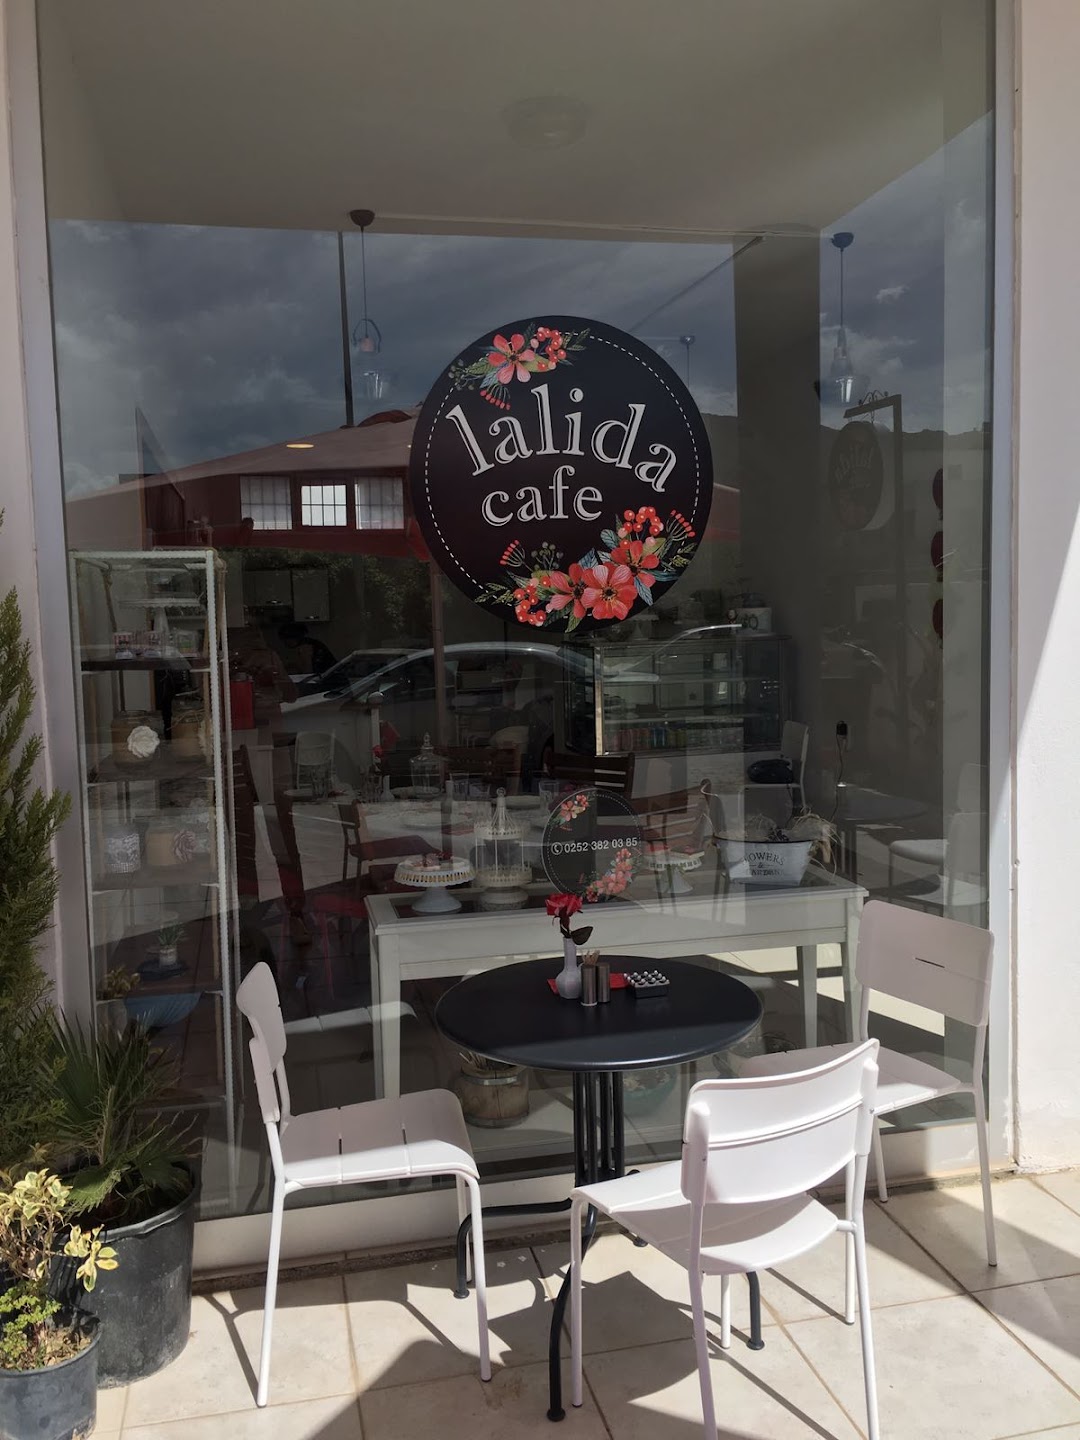 Lalida Cafe